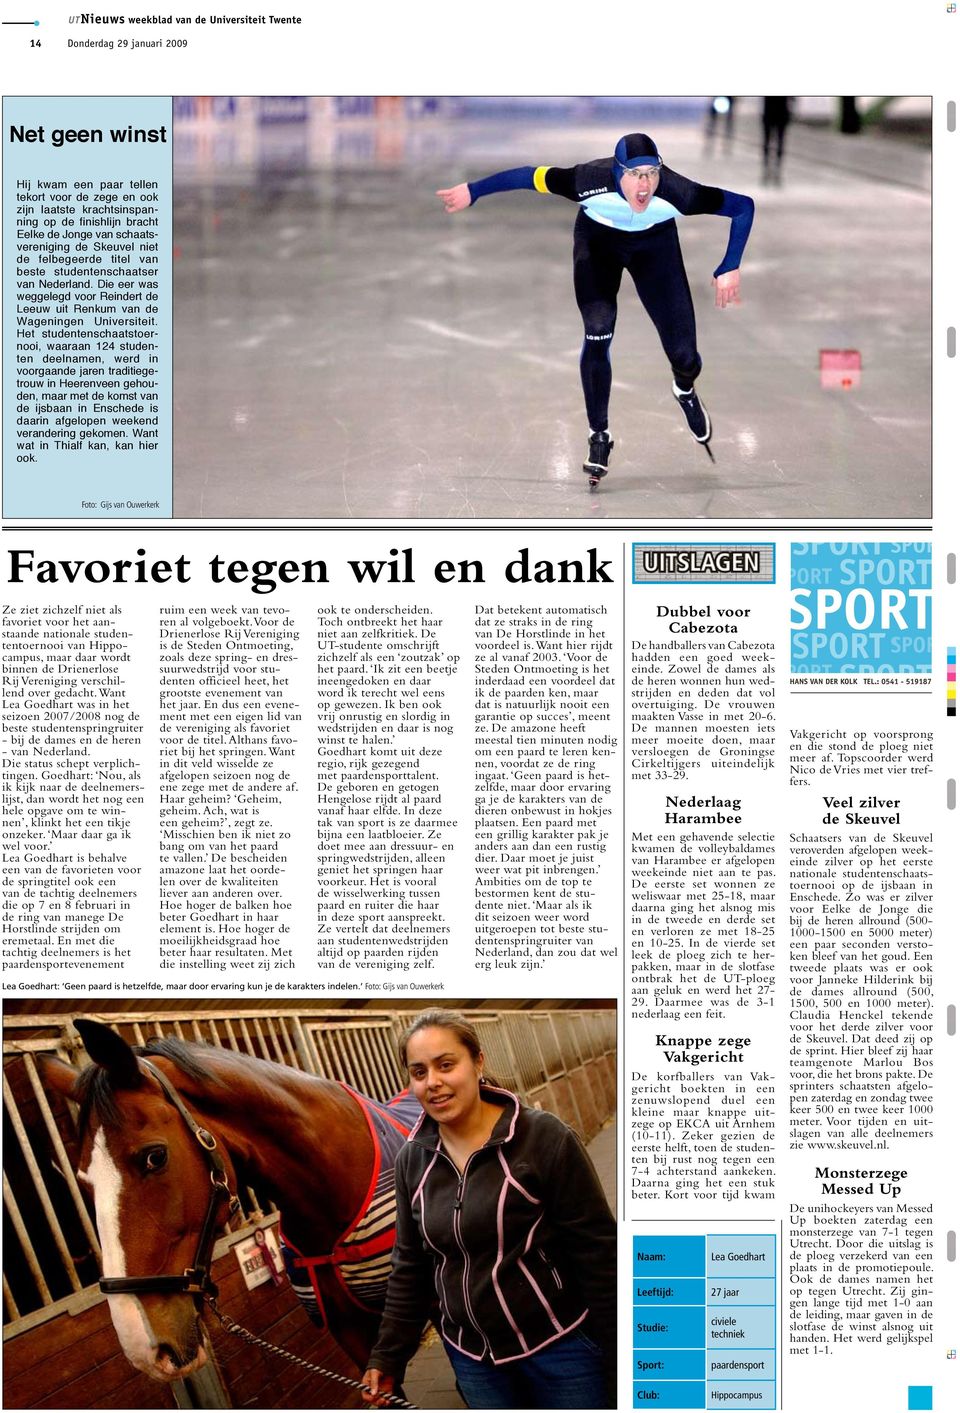 Het studentenschaatstoernooi, waaraan 124 studenten deelnamen, werd in voorgaande jaren traditiegetrouw in Heerenveen gehouden, maar met de komst van de ijsbaan in Enschede is daarin afgelopen